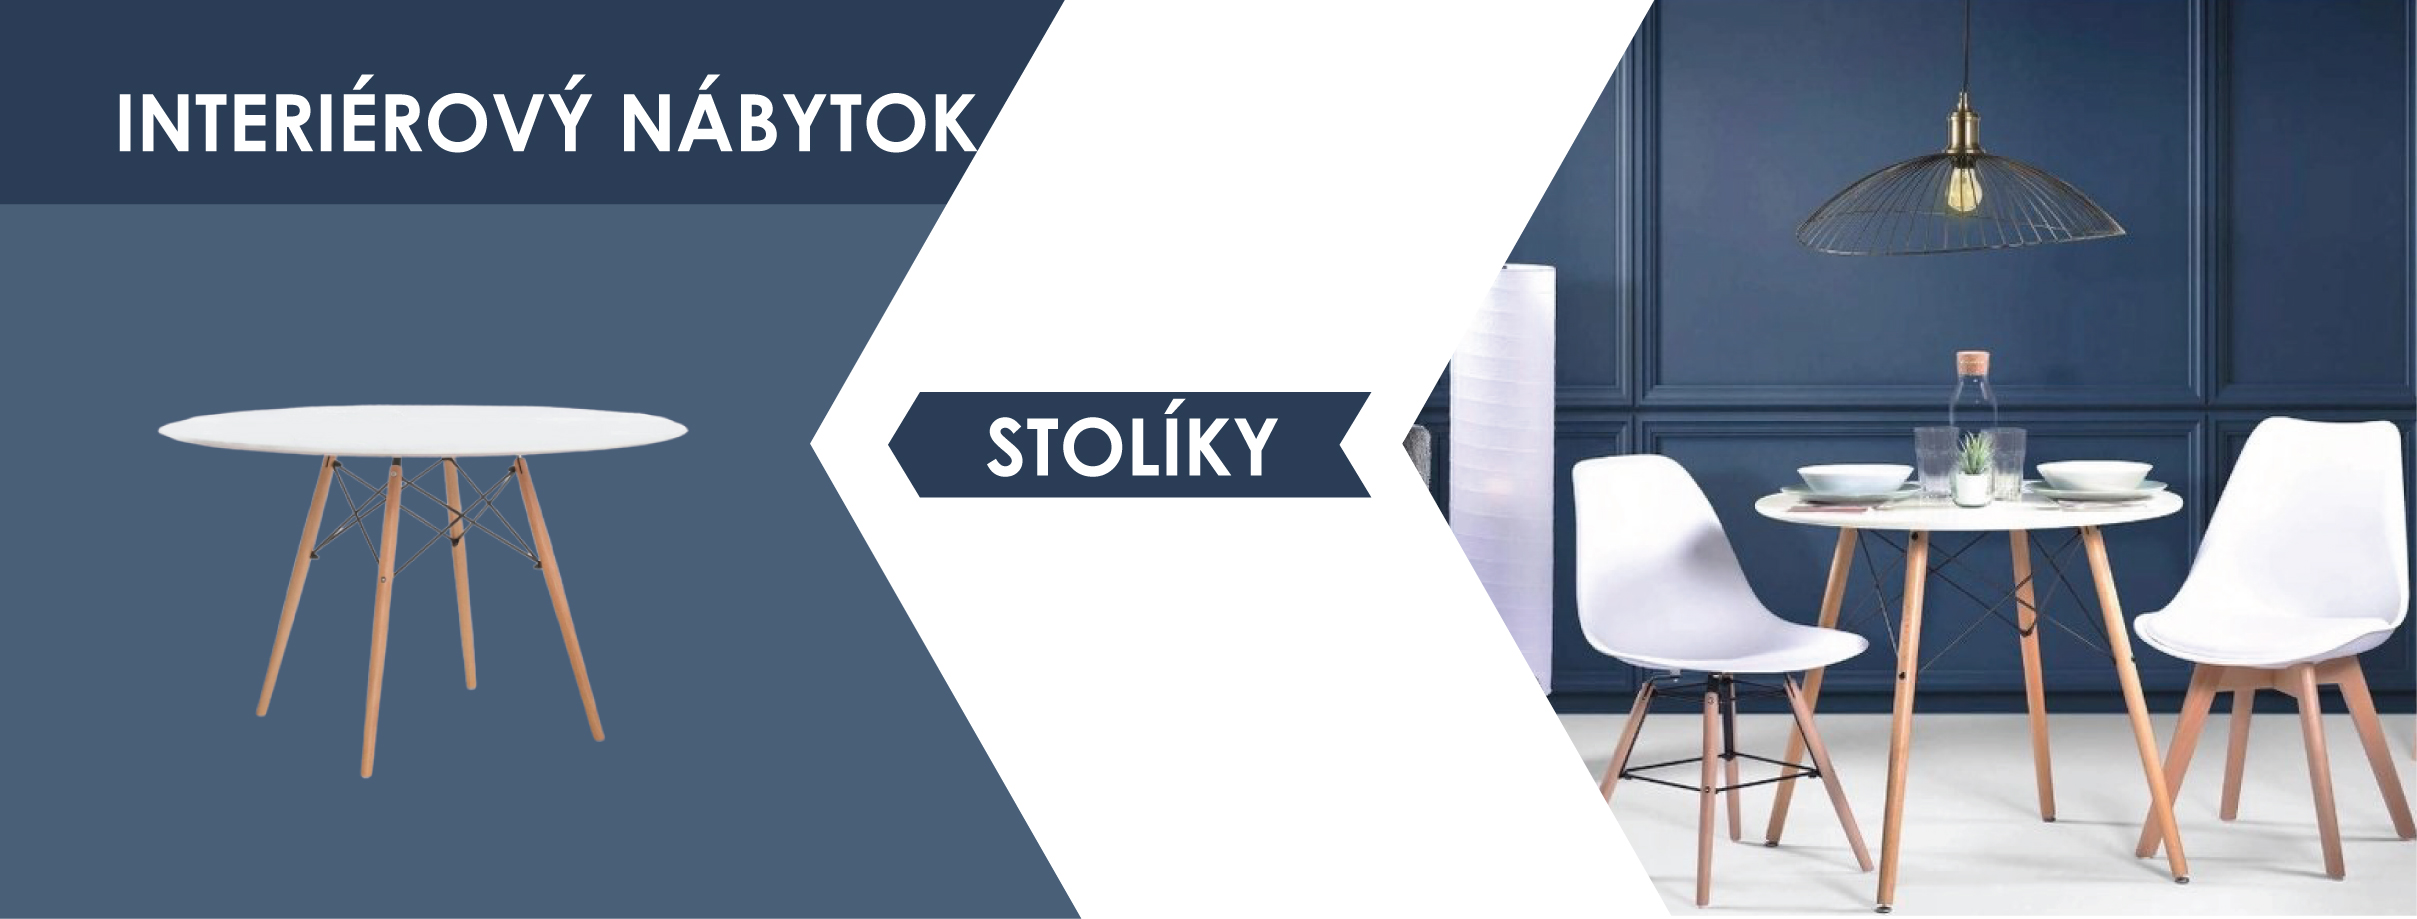 sk_NABYTOK_STOLIKY-01-01